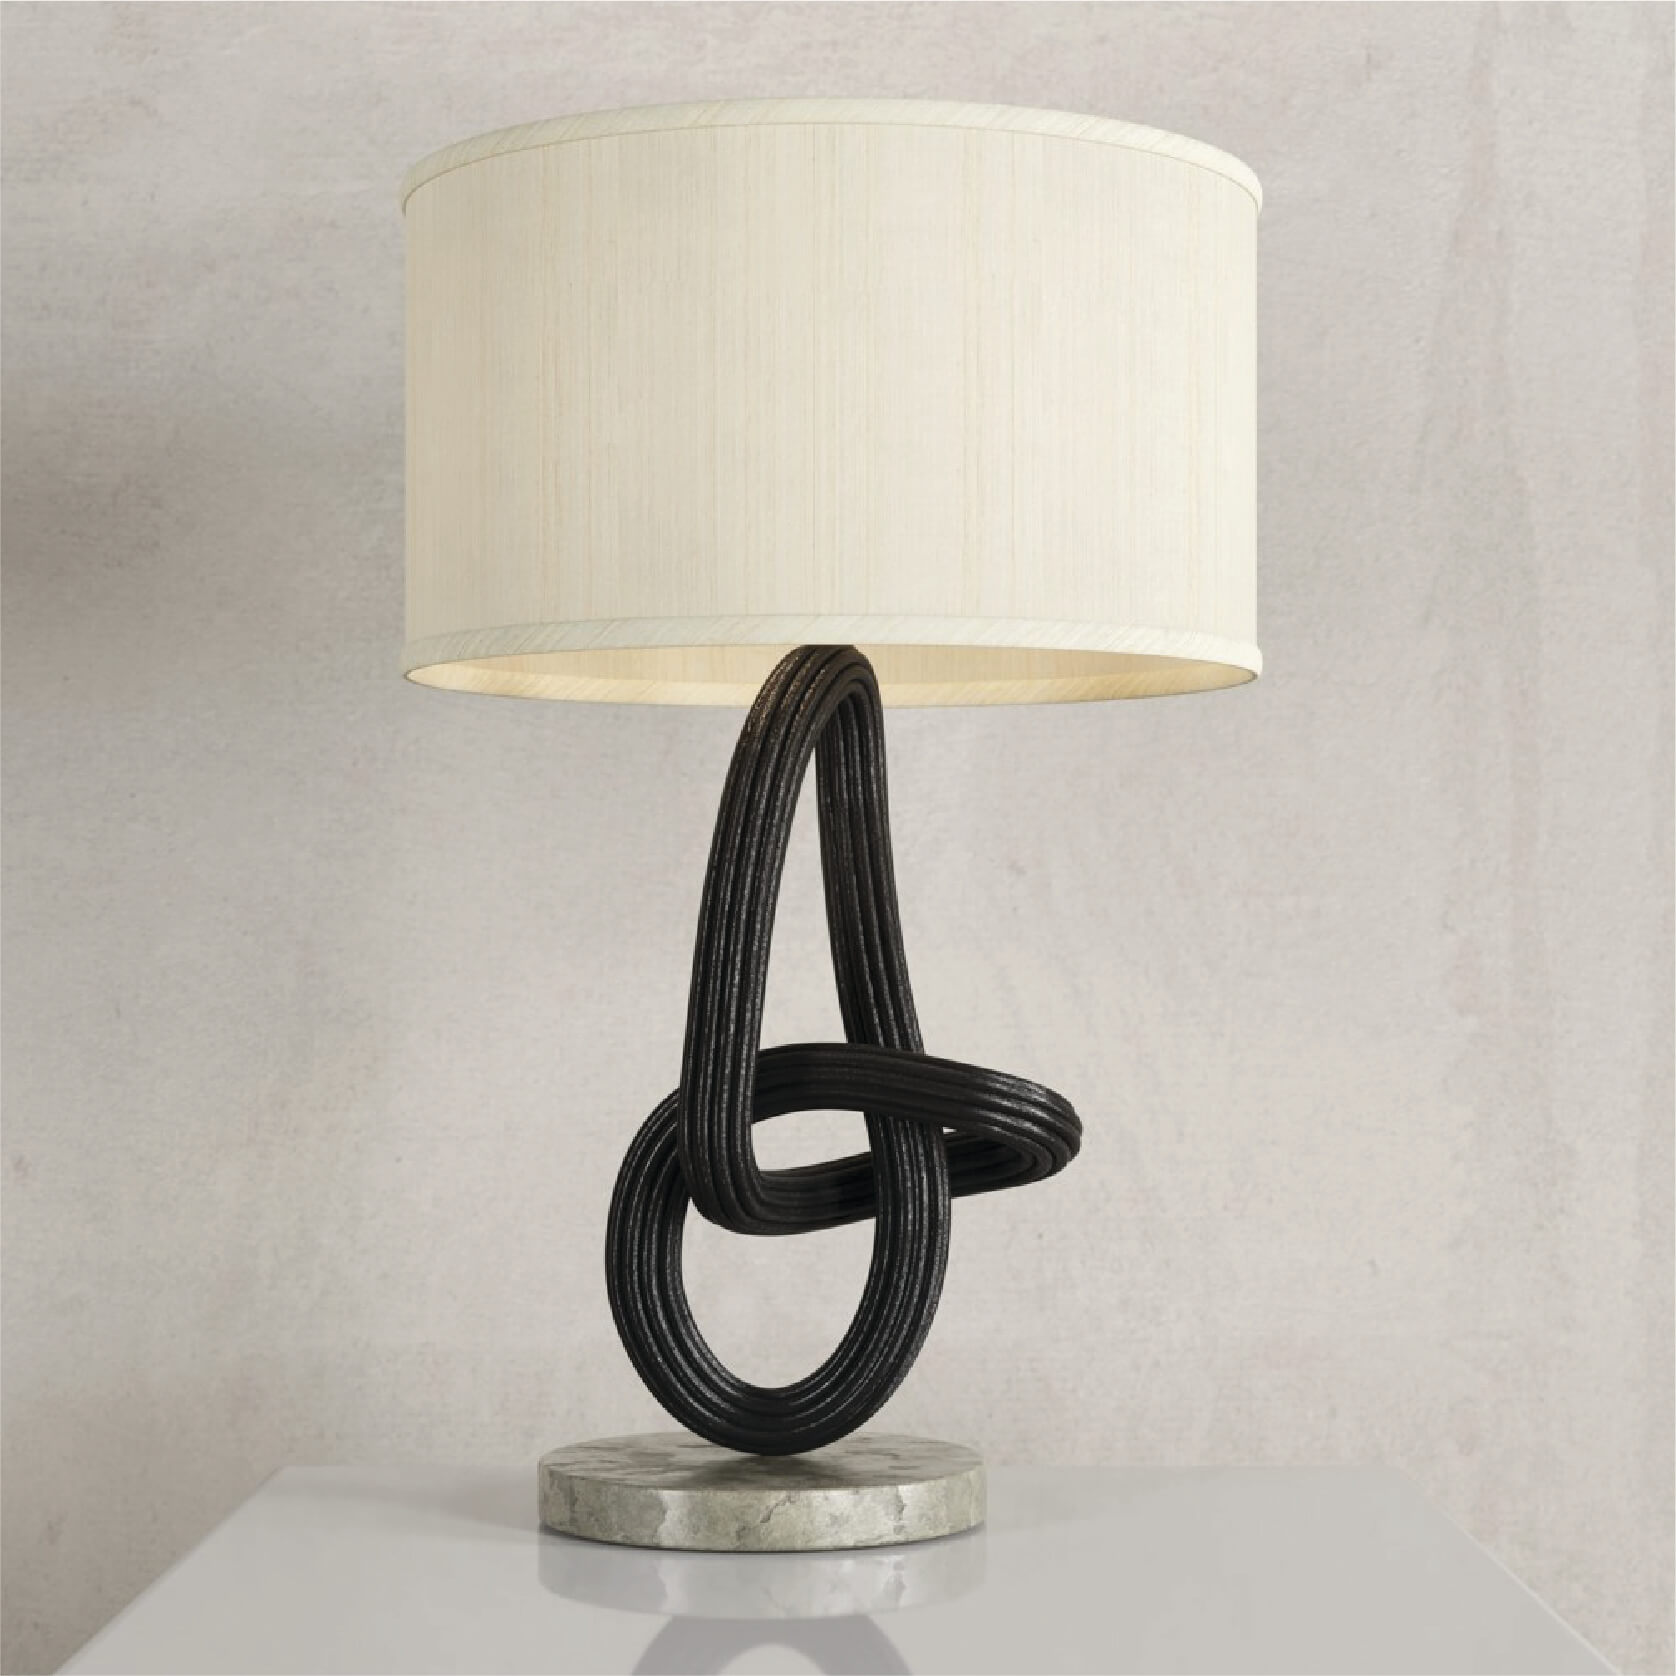 FIORI LAMP by Finali - Design Commune Feature